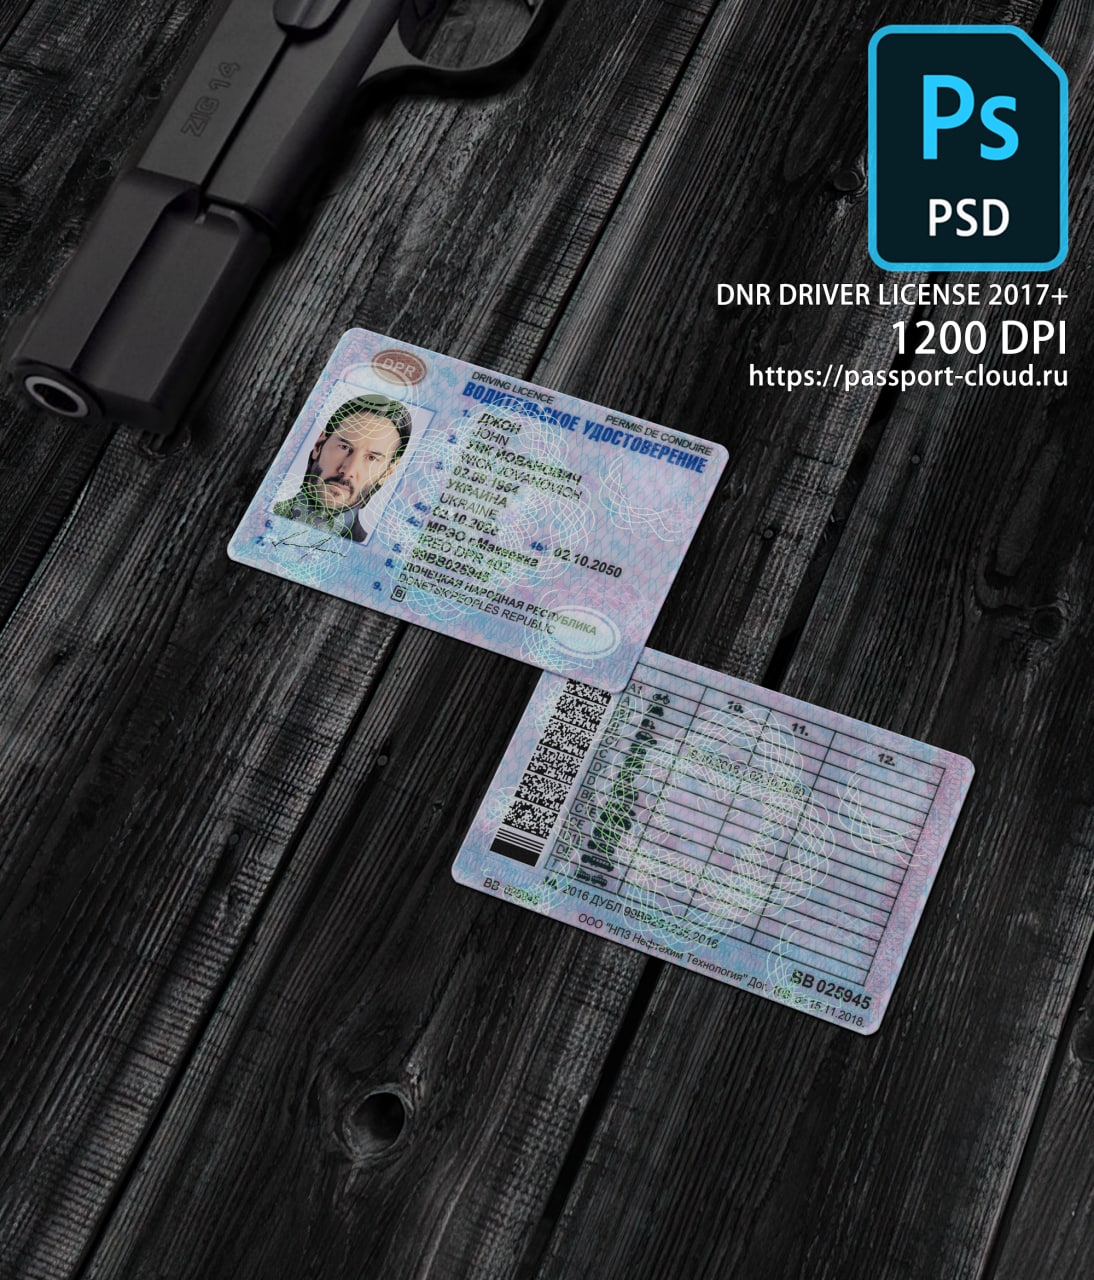 DNR Driver License 2017+1